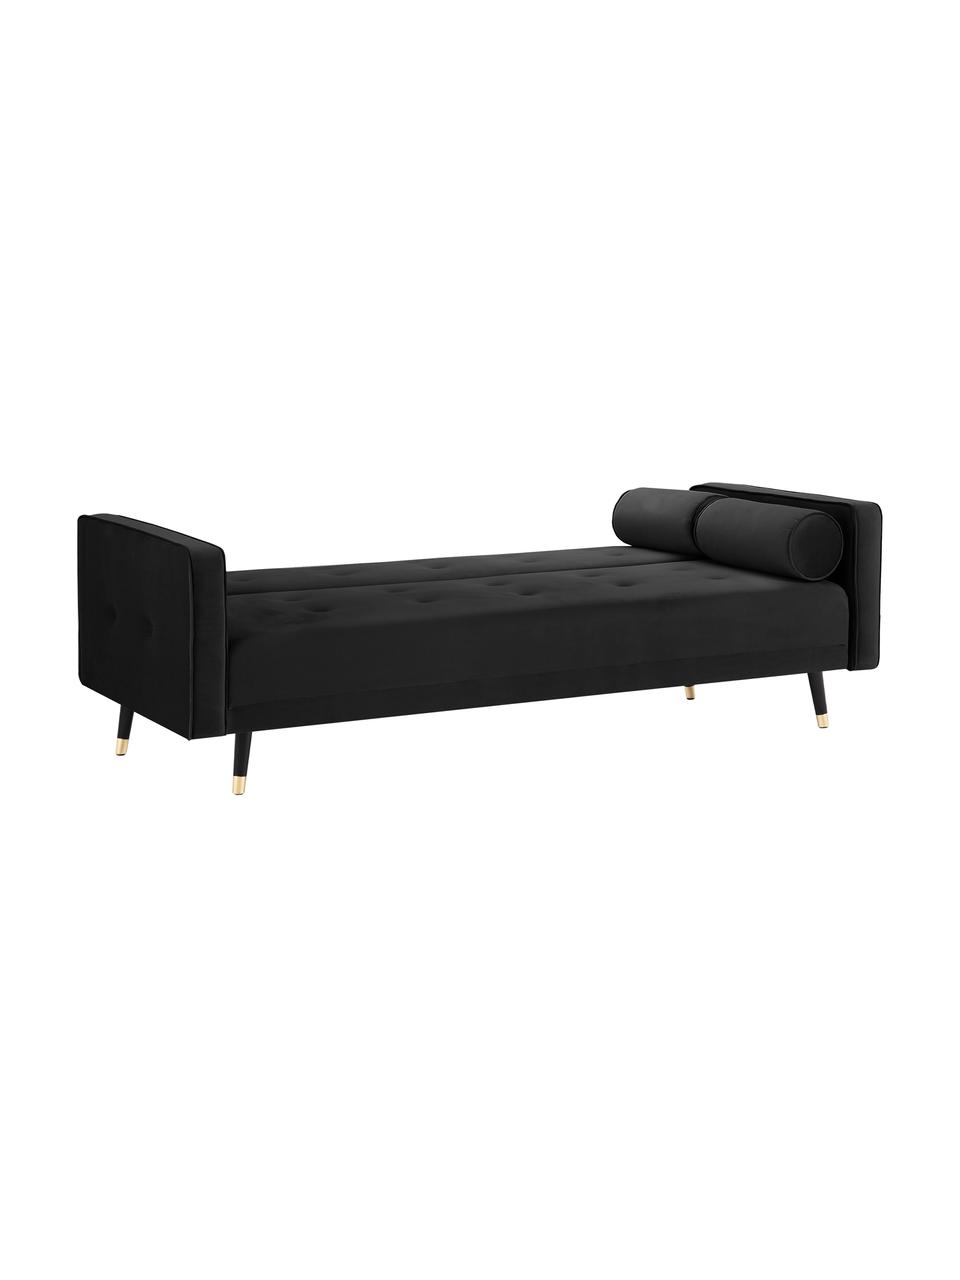 Sofa rozkładana z aksamitu Gia (3-osobowa), Tapicerka: aksamit poliestrowy, Nogi: drewno bukowe, lakierowan, Czarny, S 212 x G 93 cm